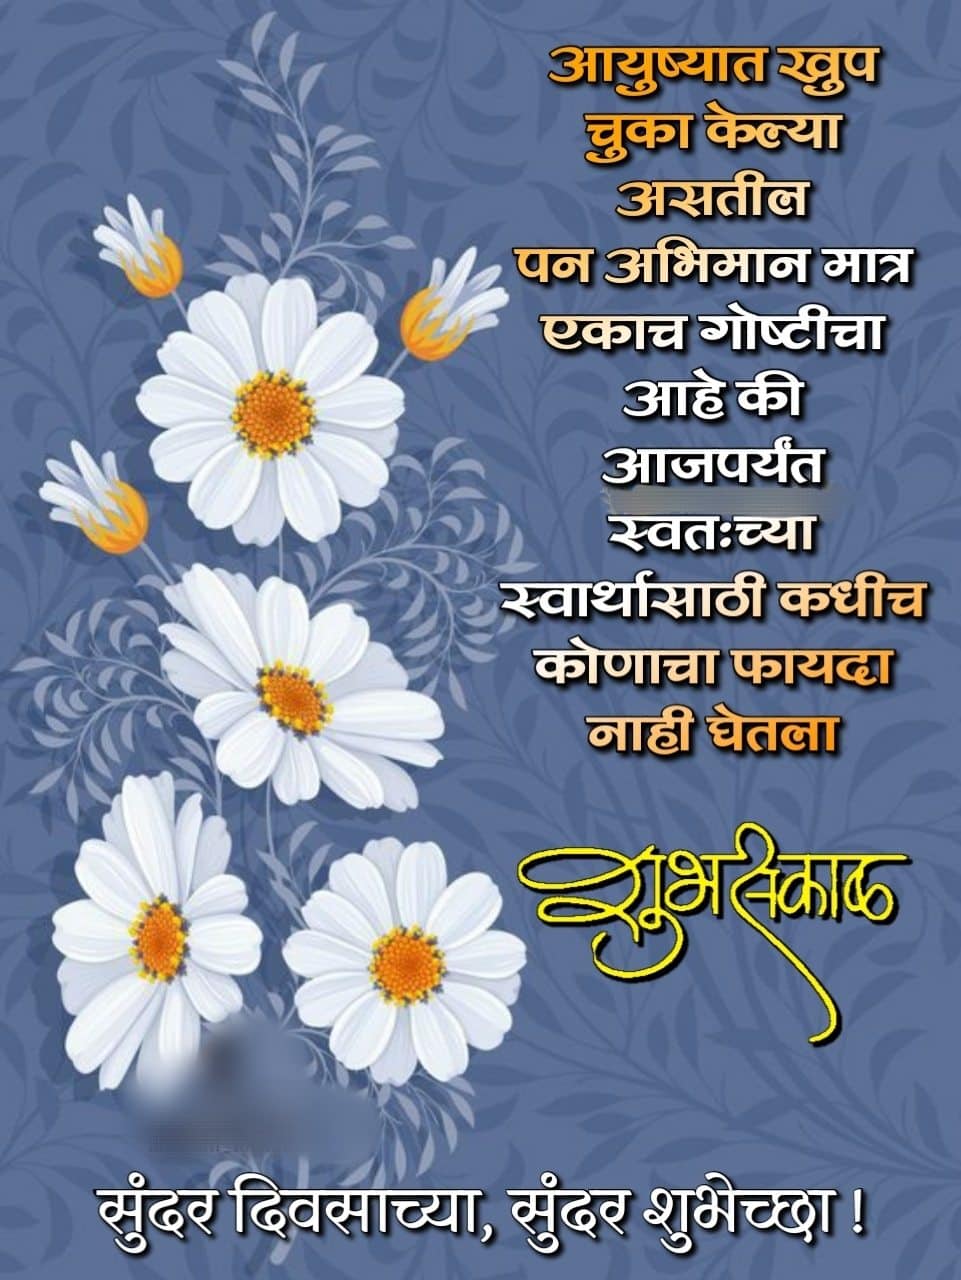 shubh sakal quotes in marathi